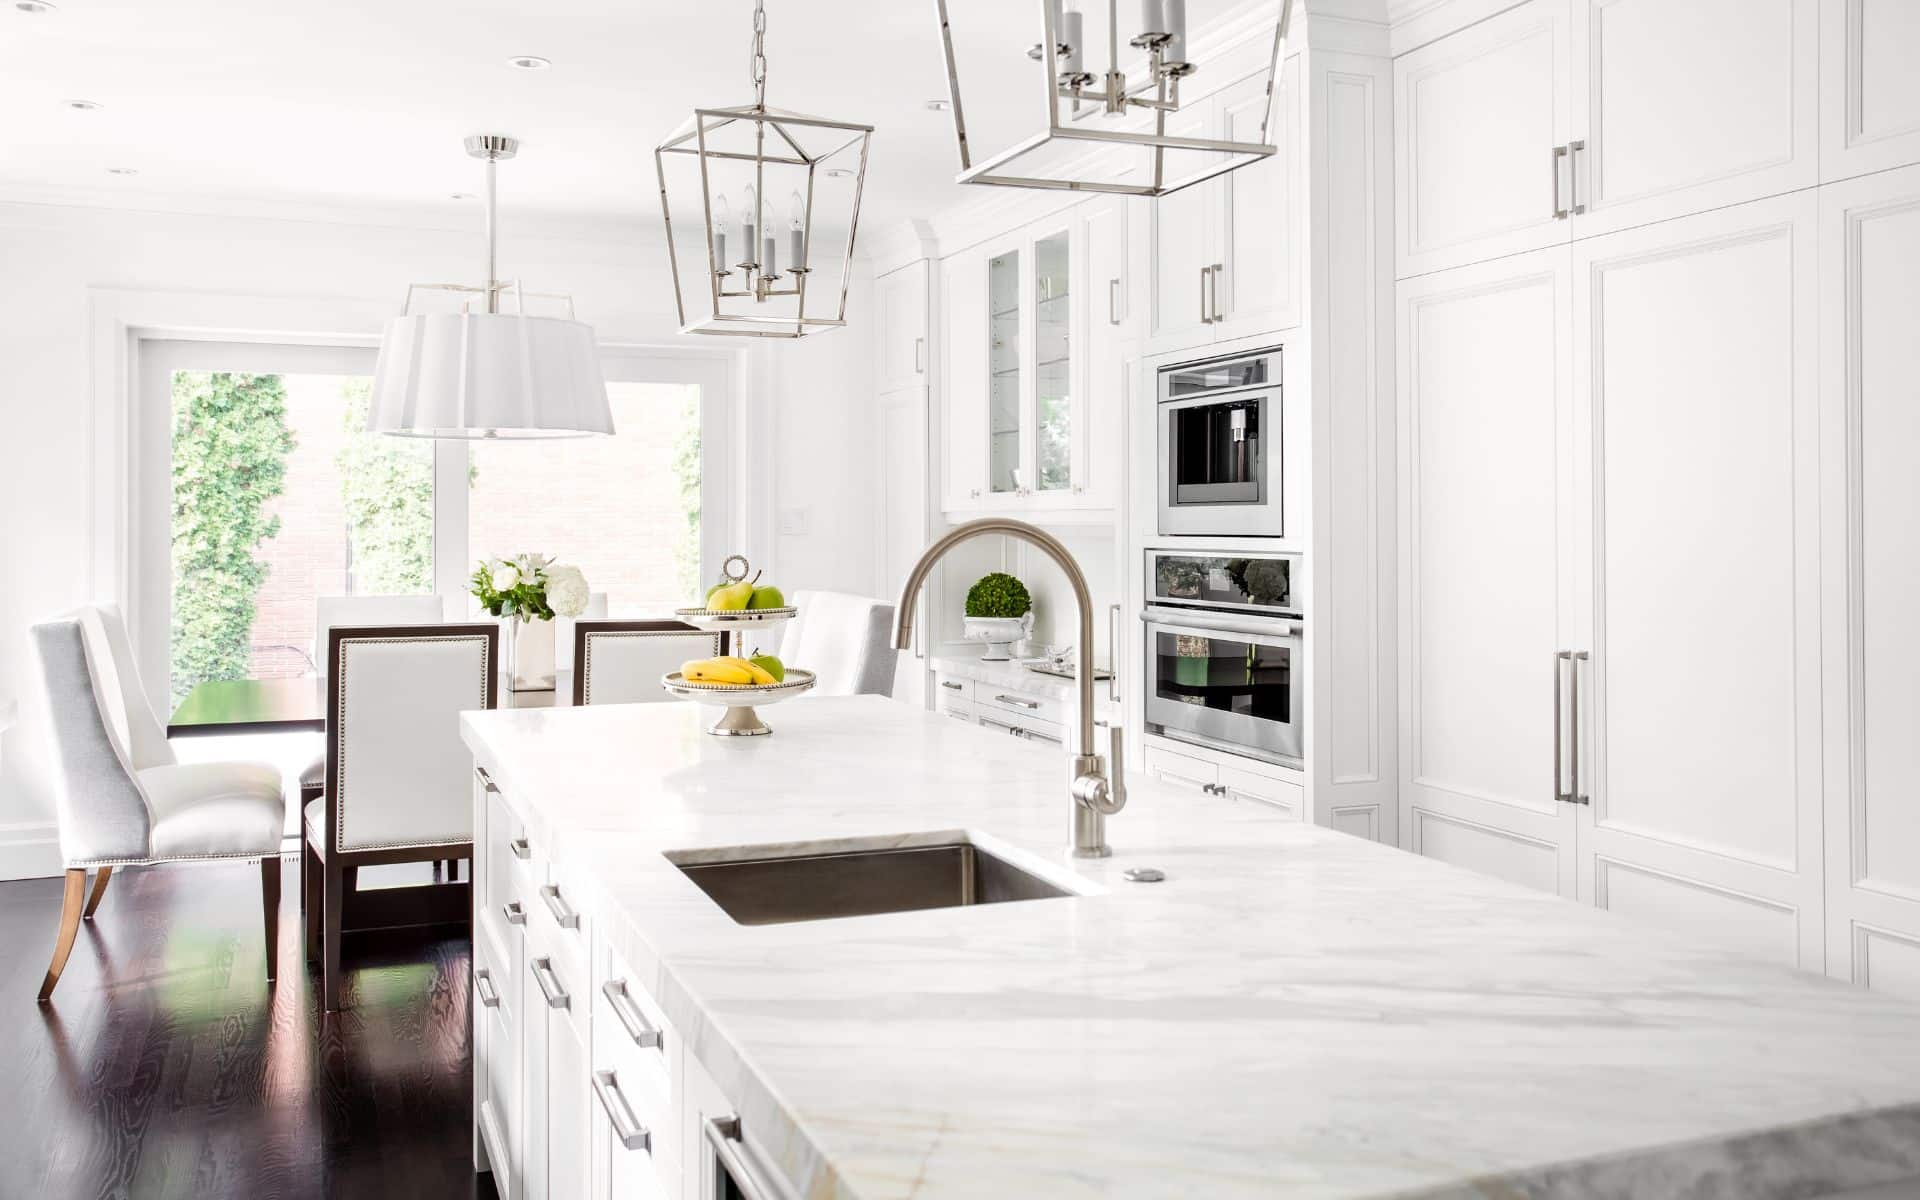 Bright white kitchen with white granite countertop